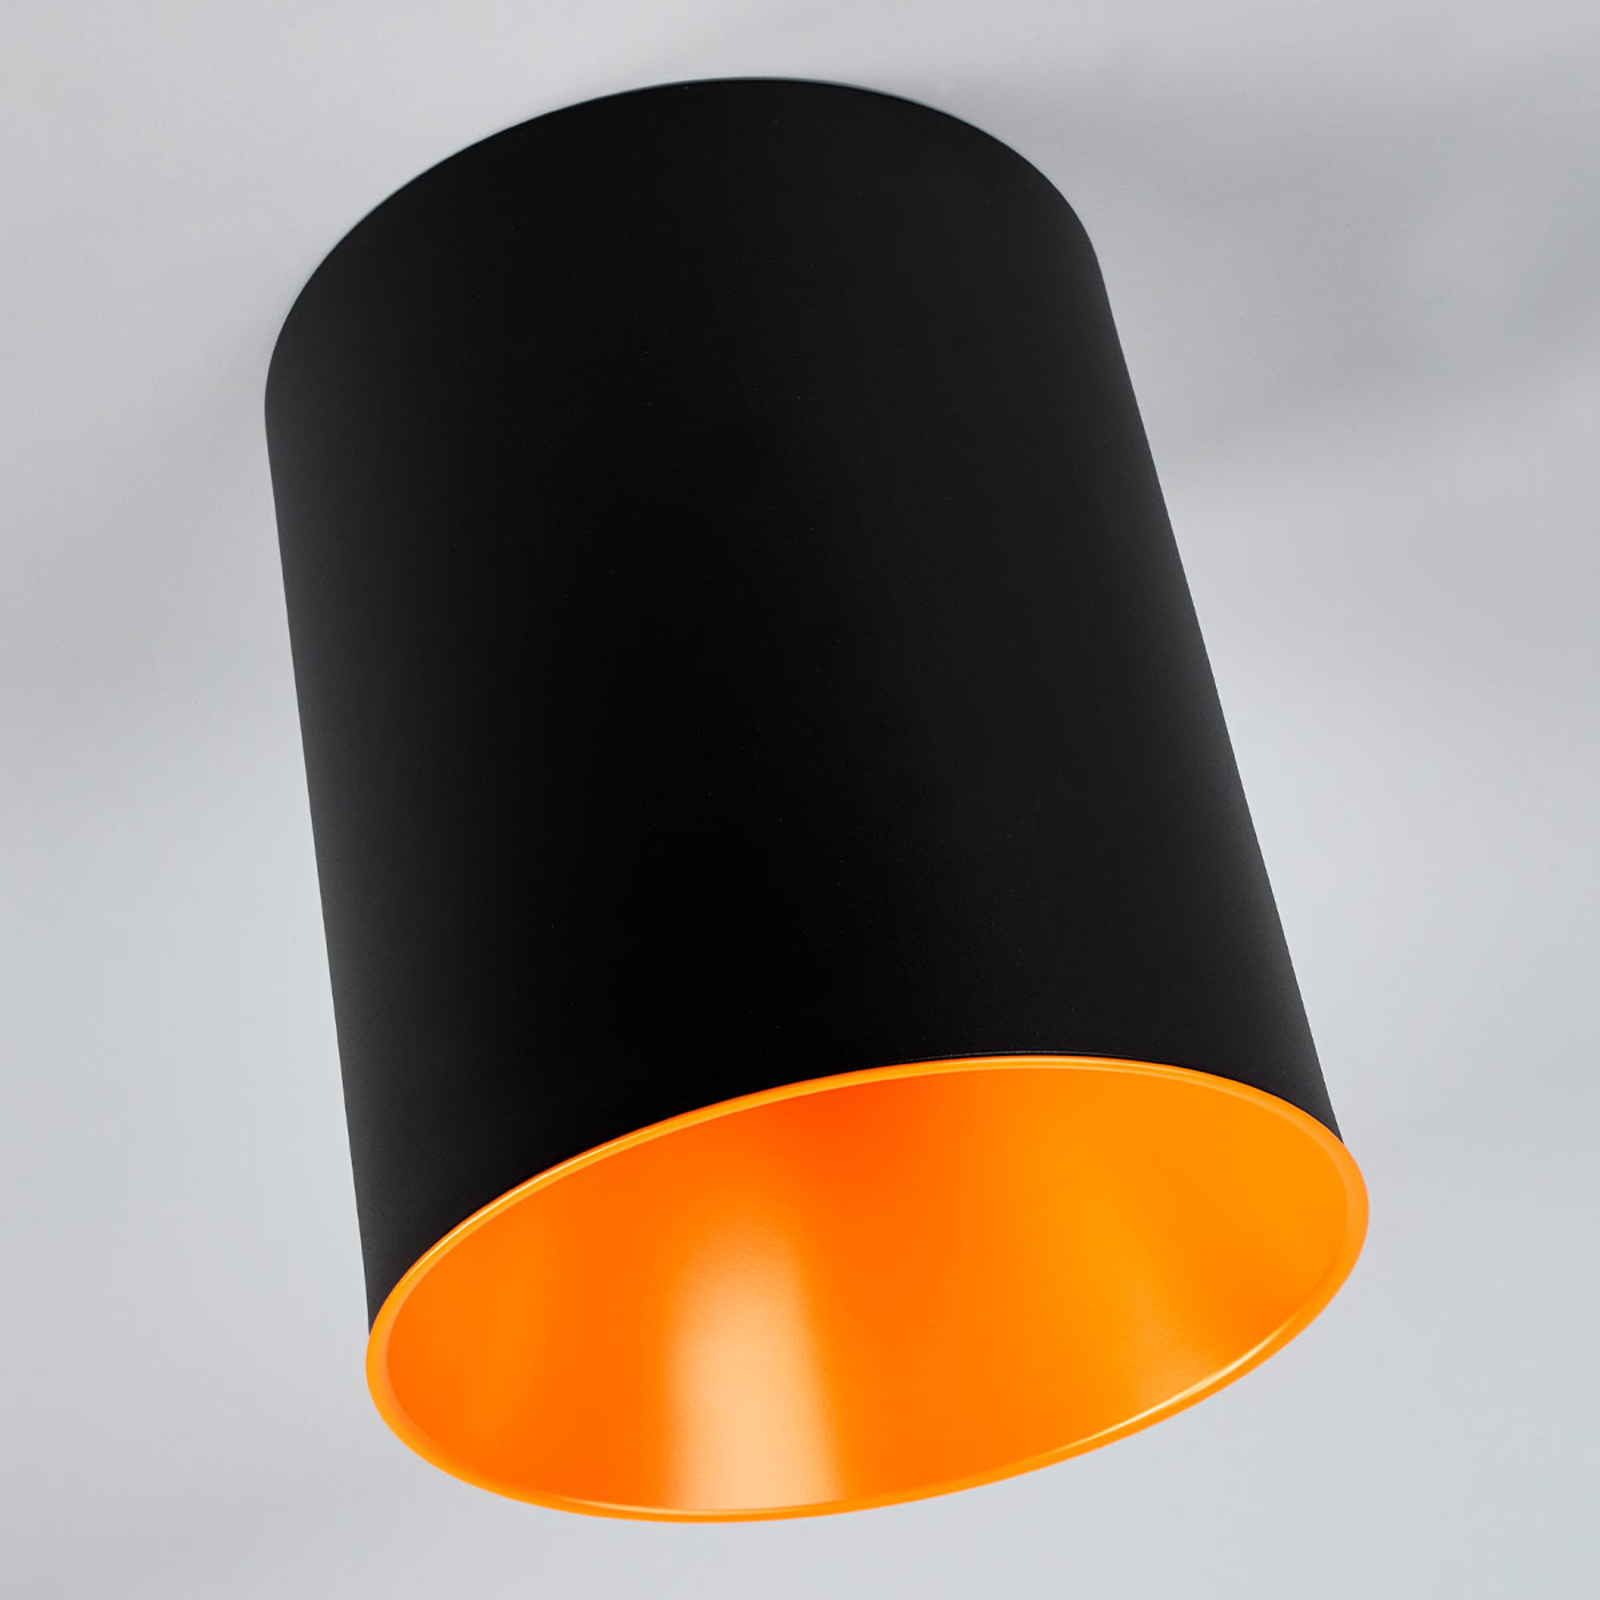 Artemide Tagora LED stropno svjetlo u obliku cilindra